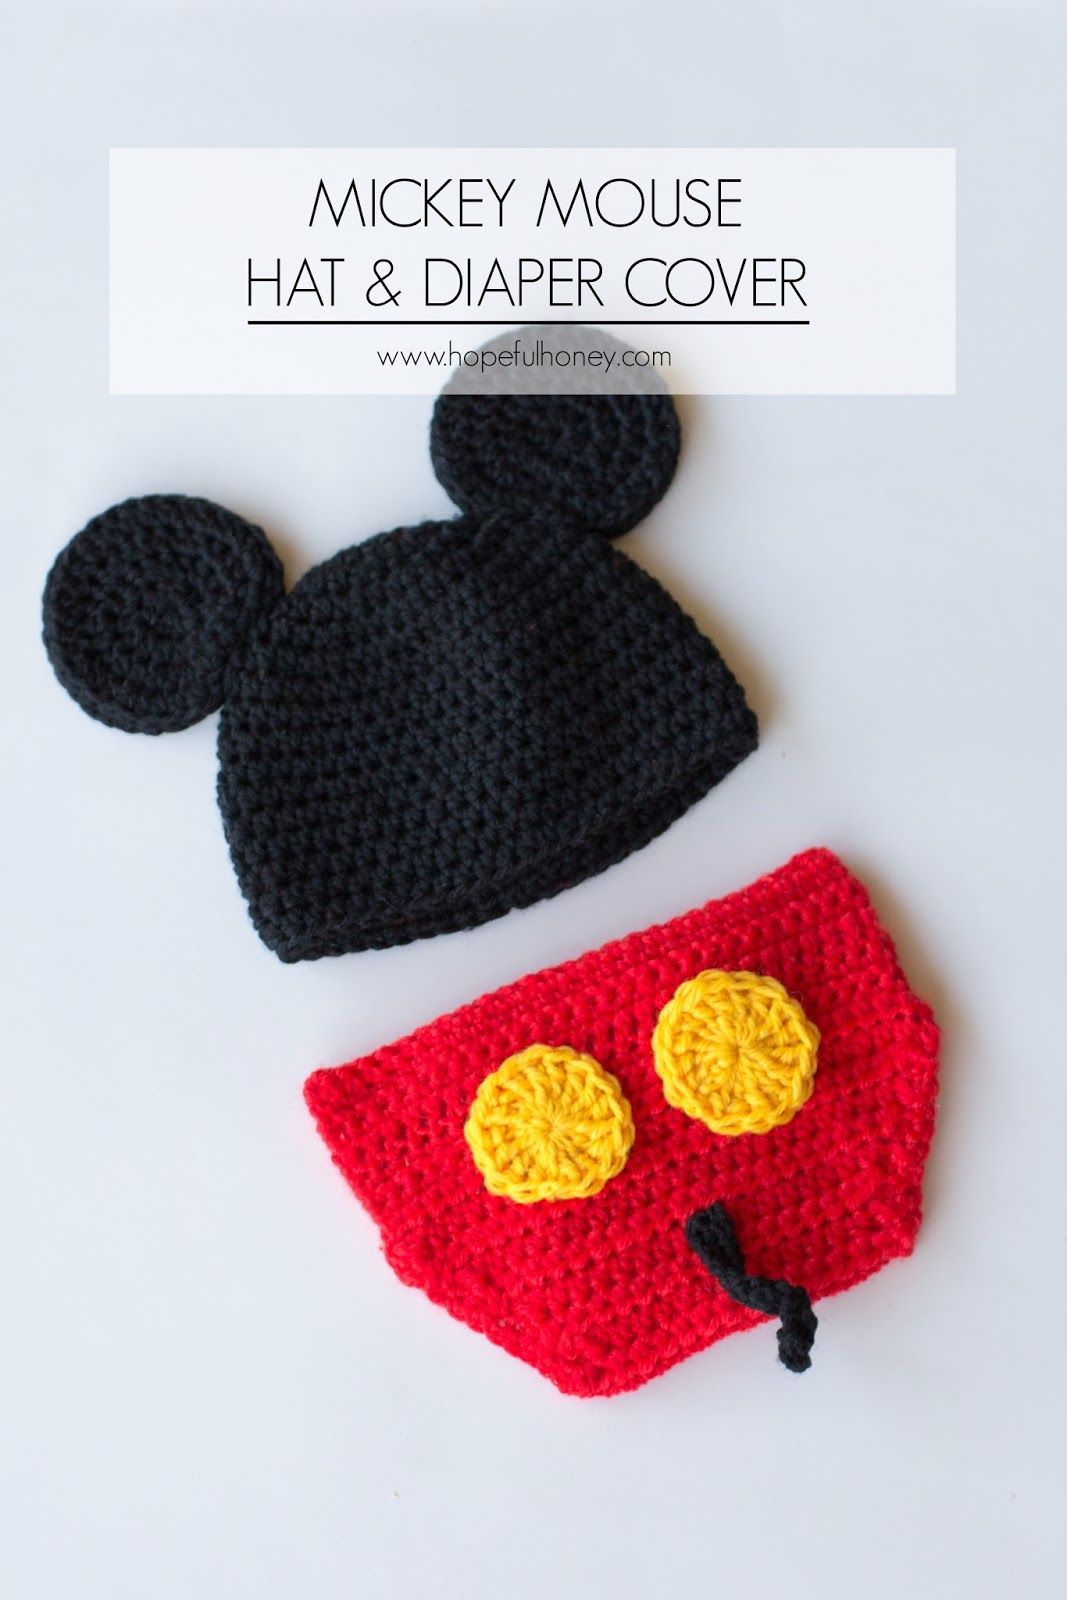 Free Crochet Pattern For Mickey Mouse Hat Mickey Mouse Inspired Hat Diaper Cover Crochet Pattern Crochet